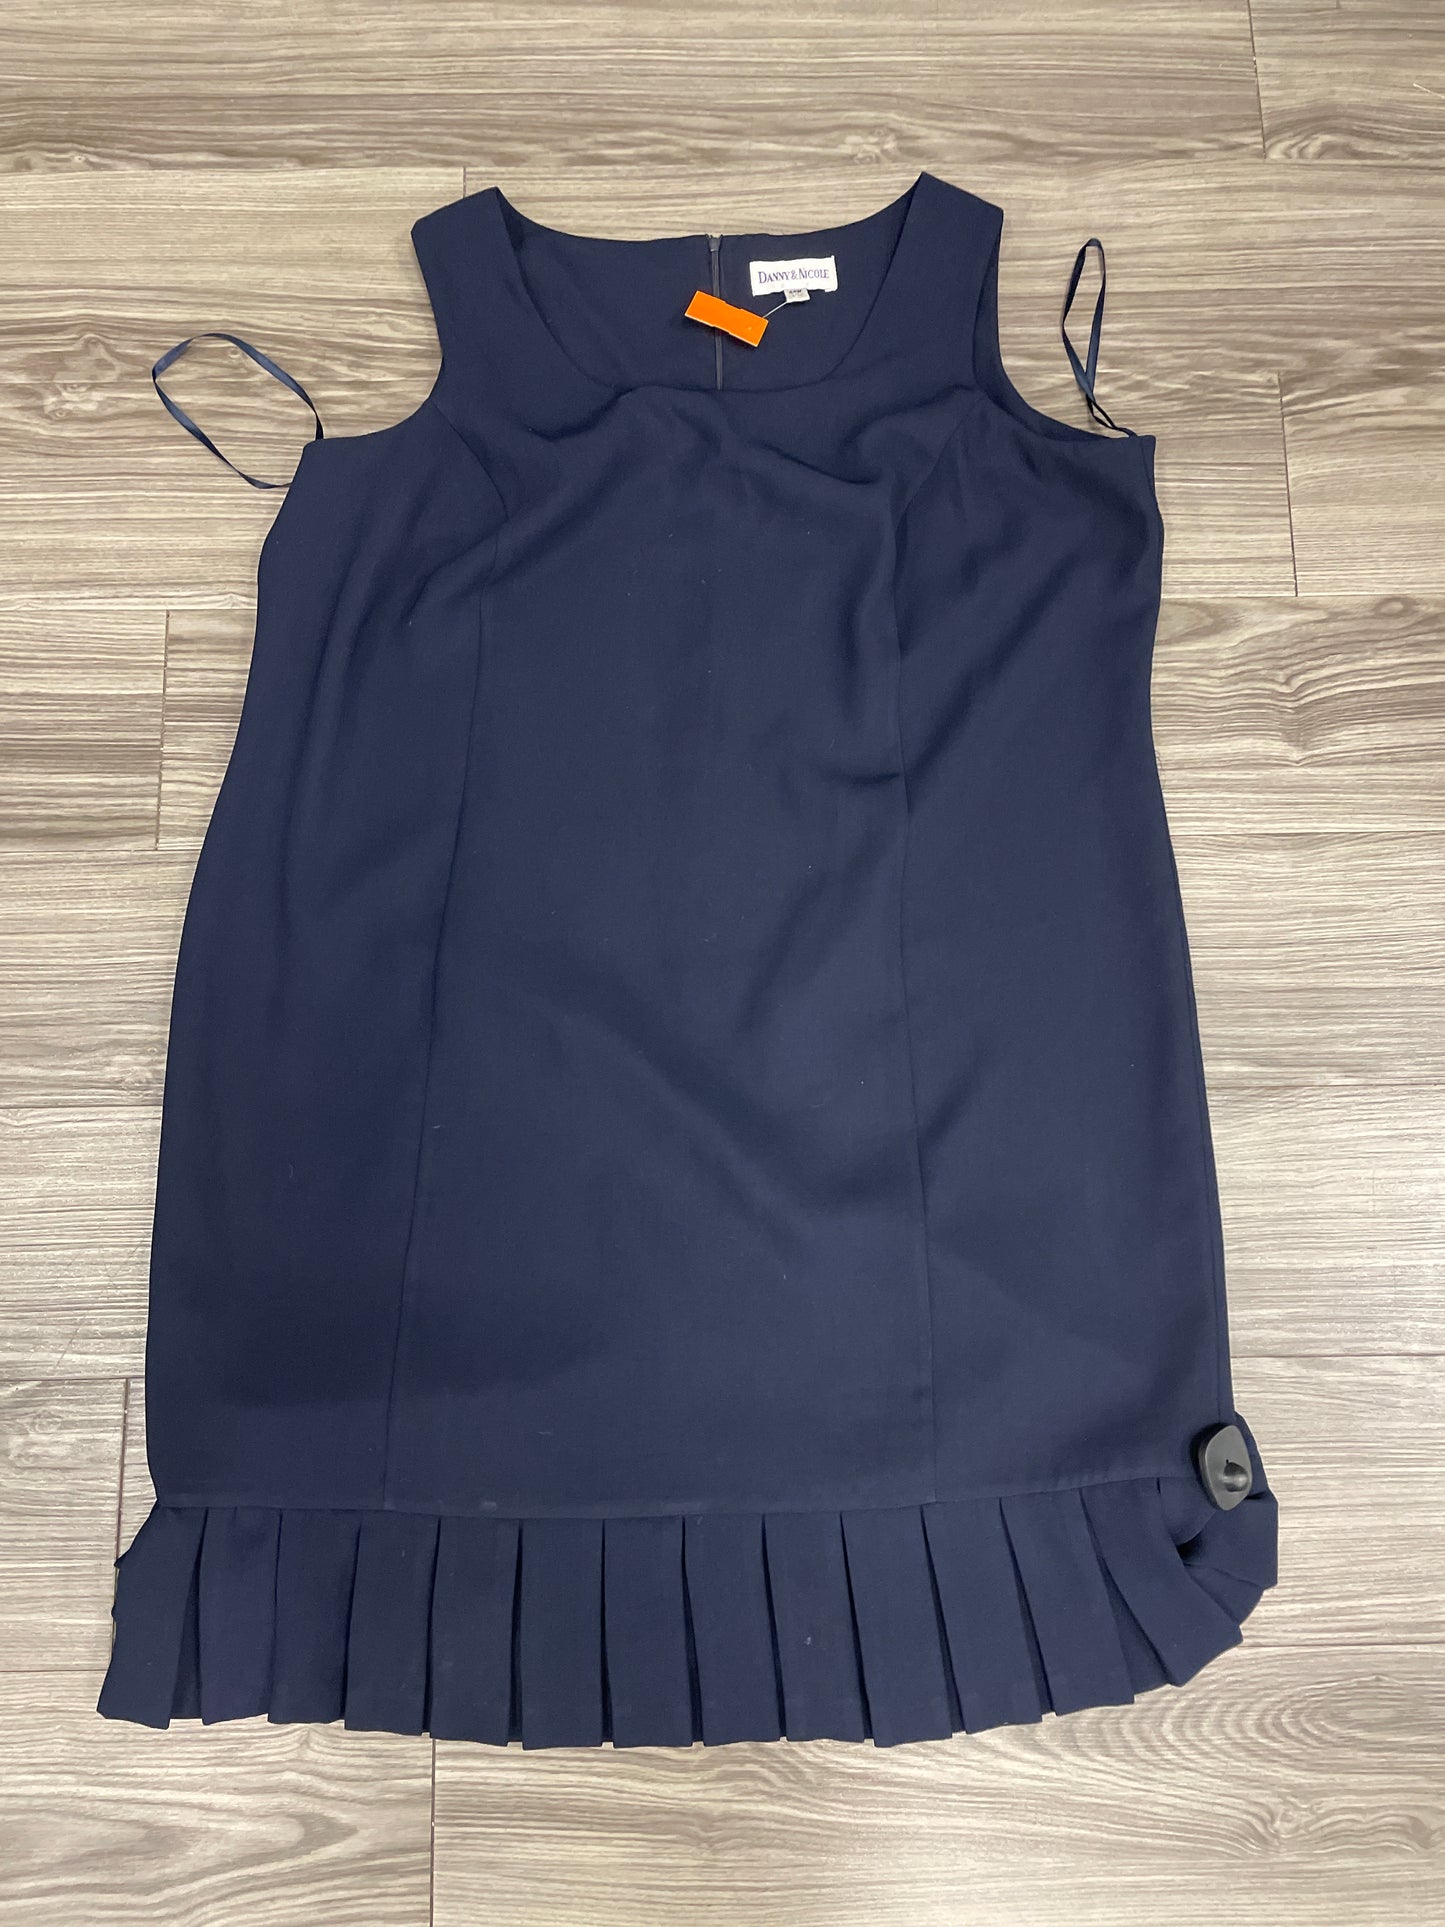 Dress Suit 2pc By Dannyandnicole  Size: 3x